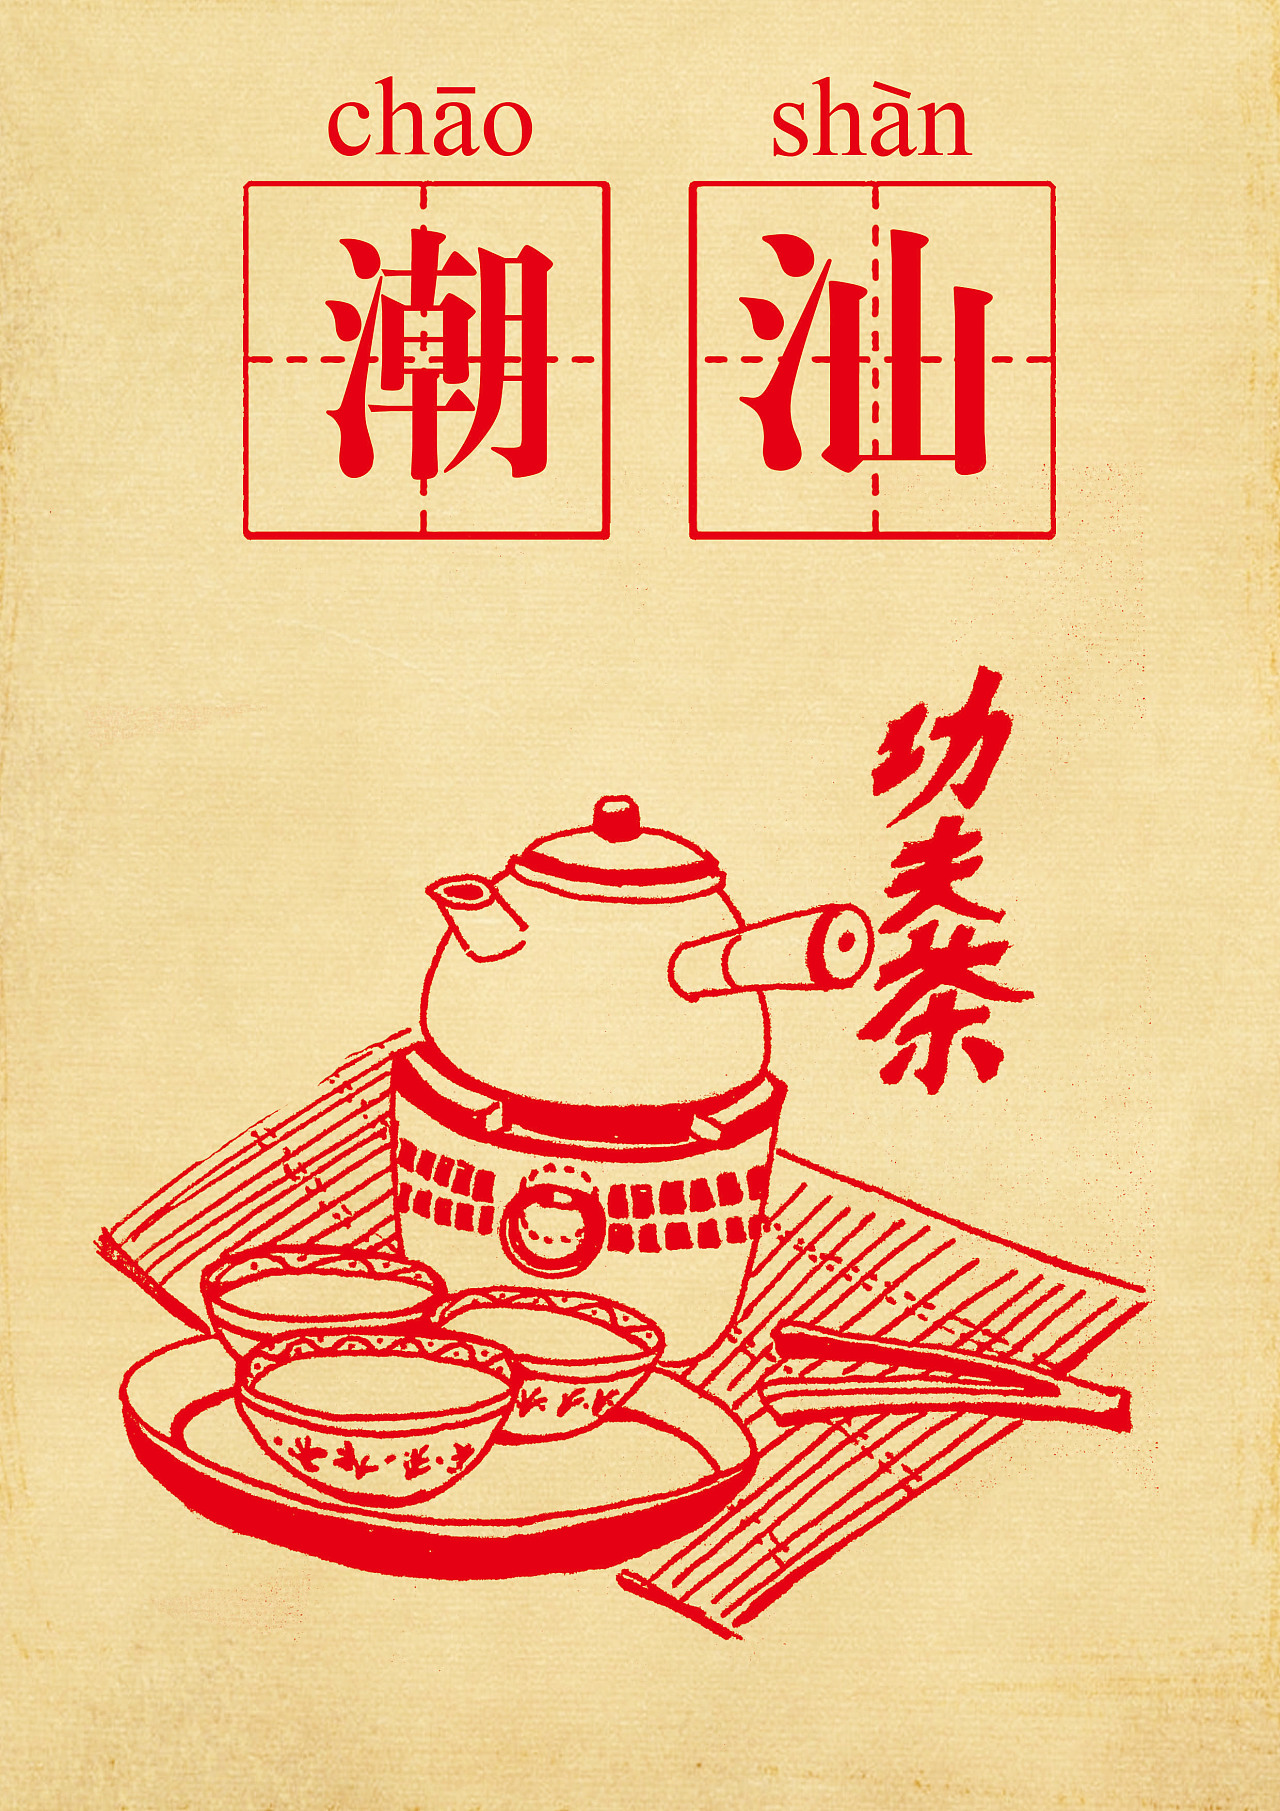 创作了5张一系列的潮汕文化插画,希望能宣扬潮汕文化特色.